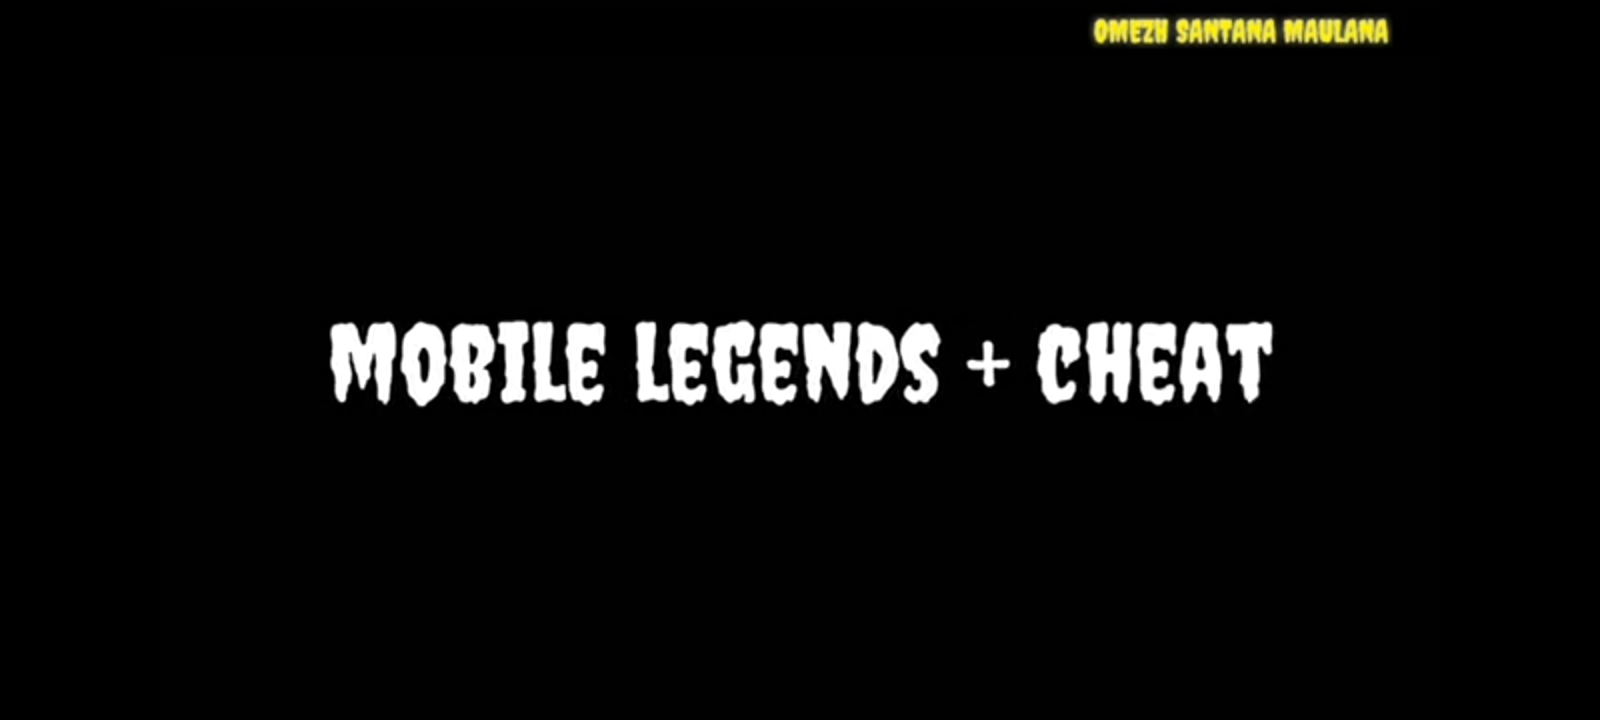 Cara Cheat Mobile Legends Terbaru Anti Banned (Tanpa Root)